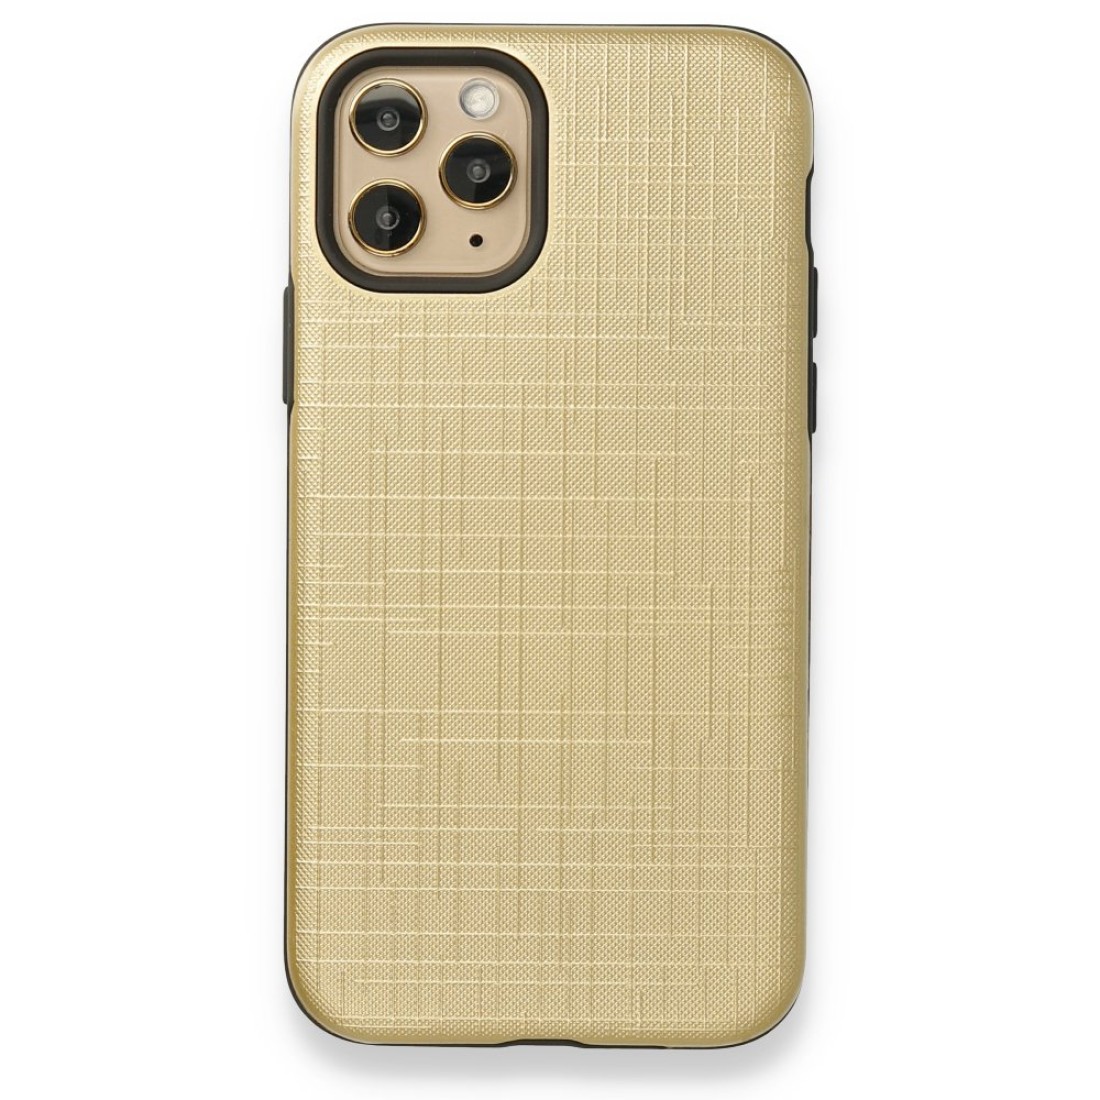 Apple iPhone 11 Pro Max Kılıf YouYou Silikon Kapak - Gold